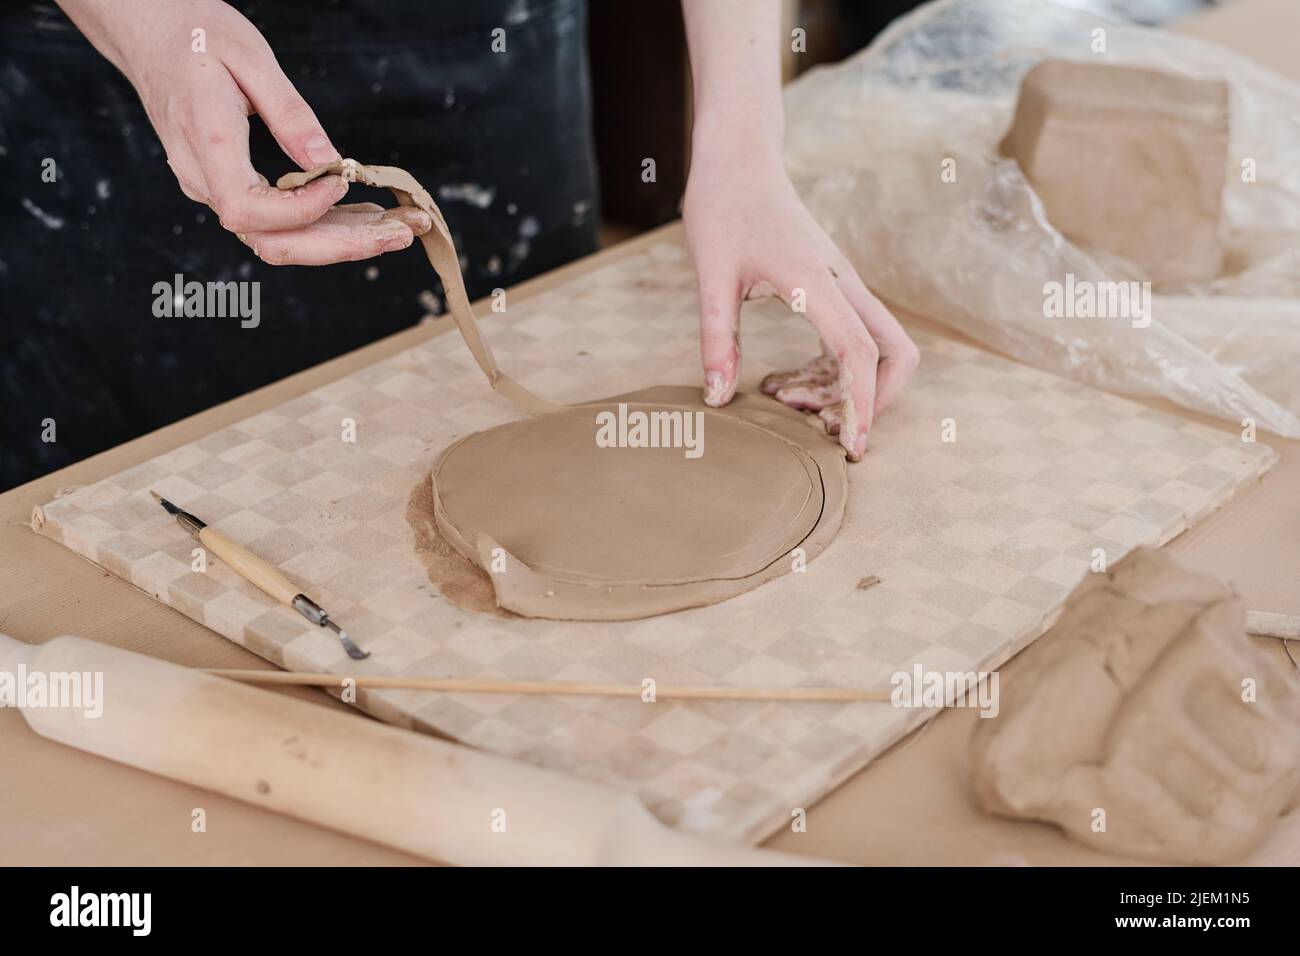 Hände von jungen Handwerker in Schürze wegnehmen übermäßige Ton, um genaue runde Form des Werkstücks für kreative eaarthenware Artikel zu erhalten Stockfoto